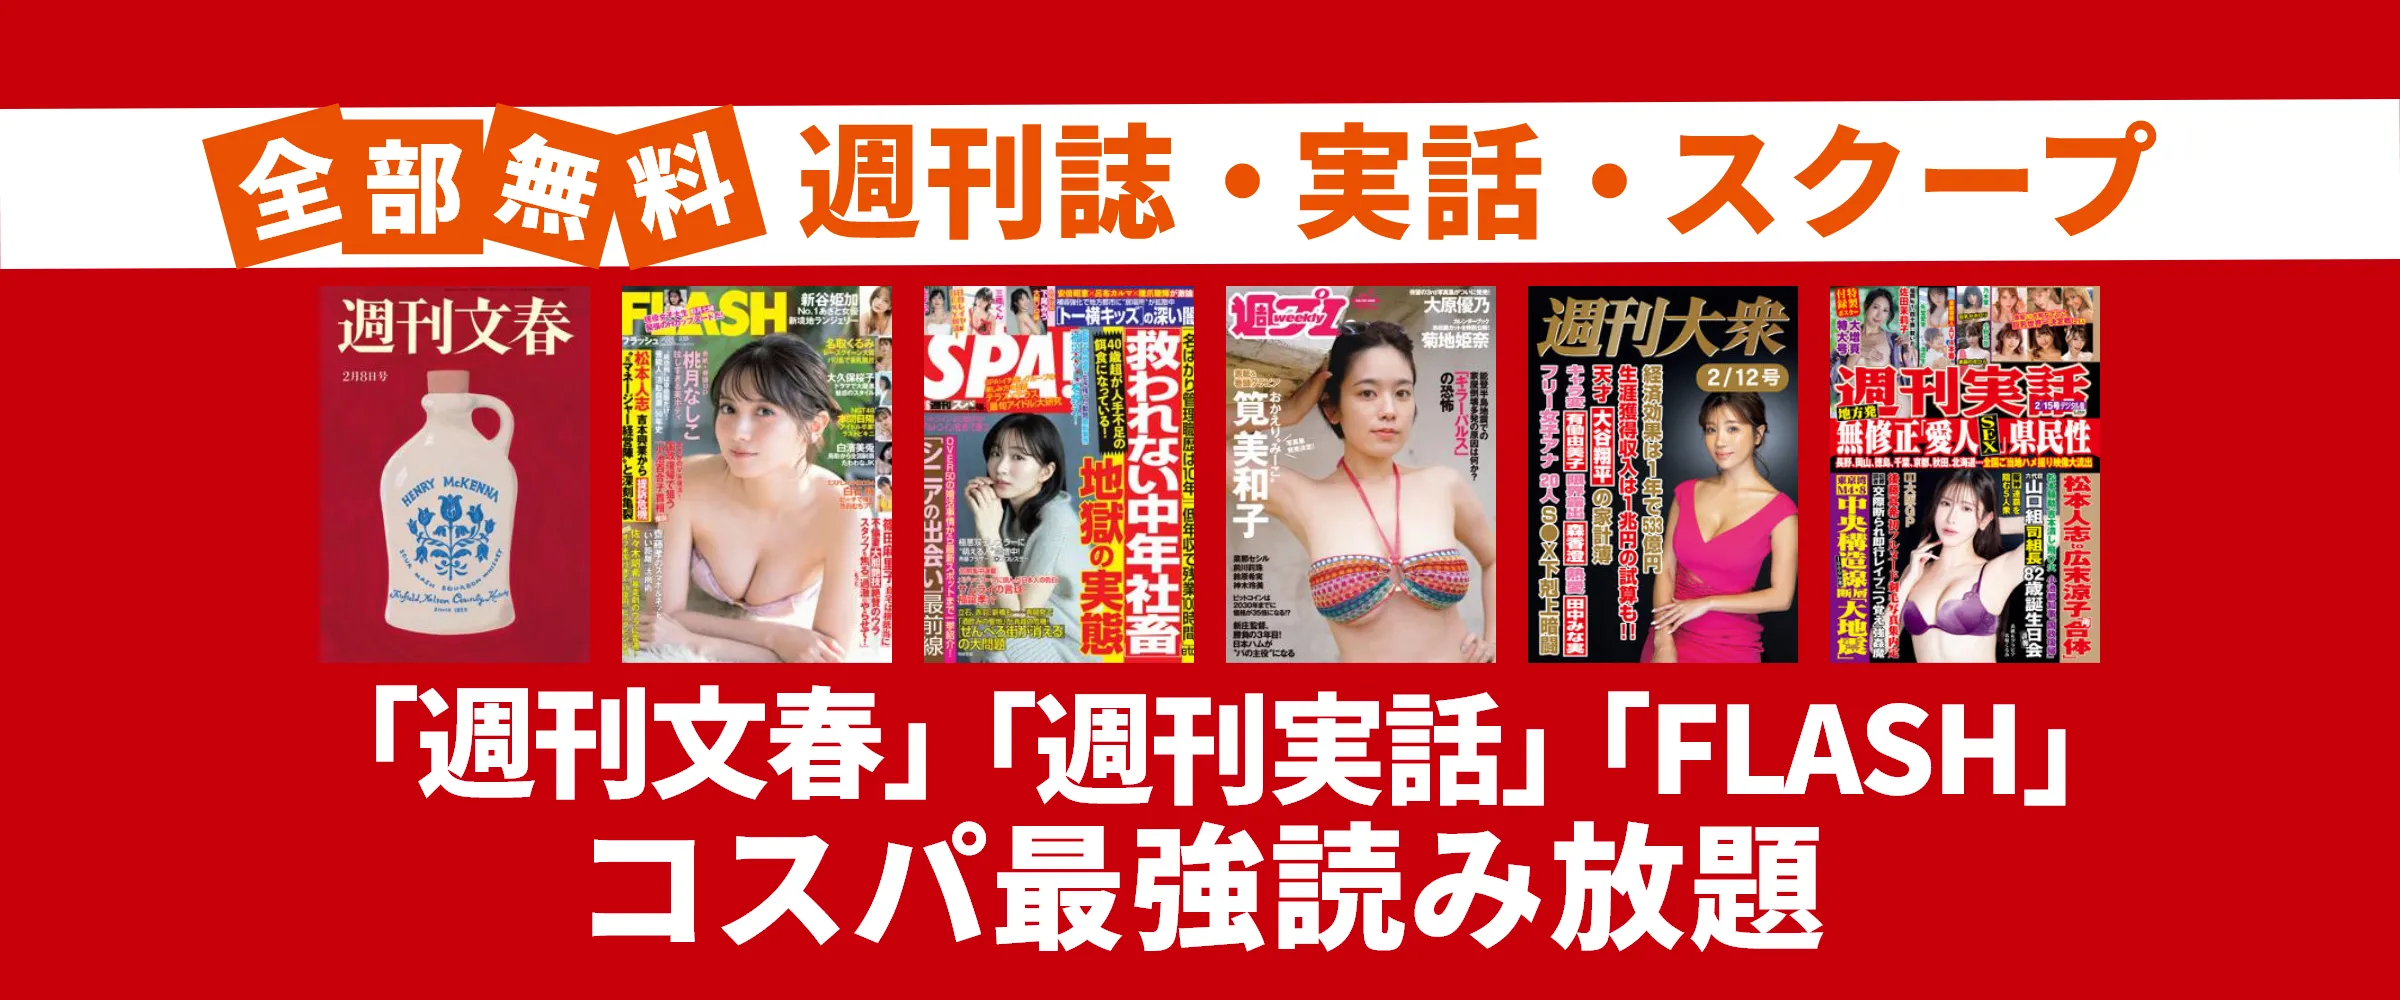 たった550円で文春、FRIDAY、アサヒ芸能など週刊誌・実話雑誌100誌以上読み放題。最初の1ヵ月無料。